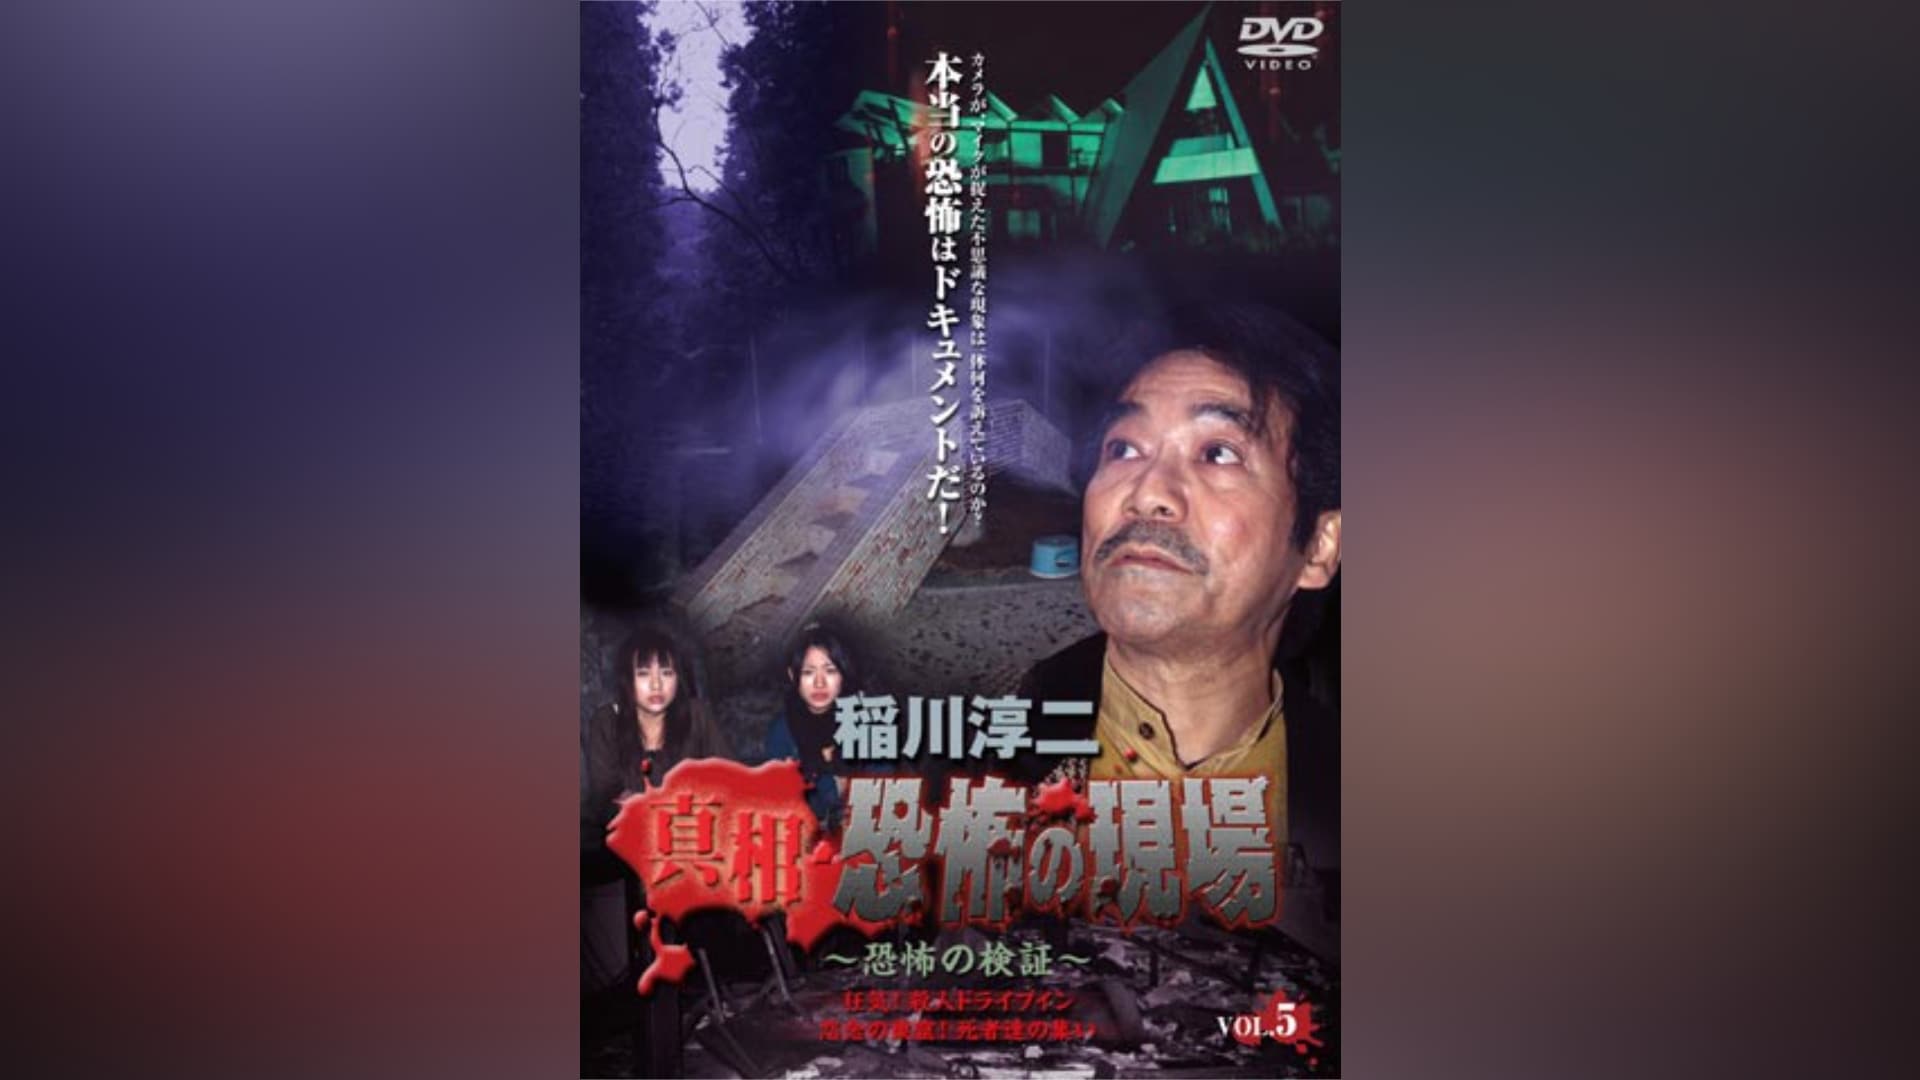 DVD/ブルーレイ2304-1403 鹿男あをによし DVD-BOX - TVドラマ